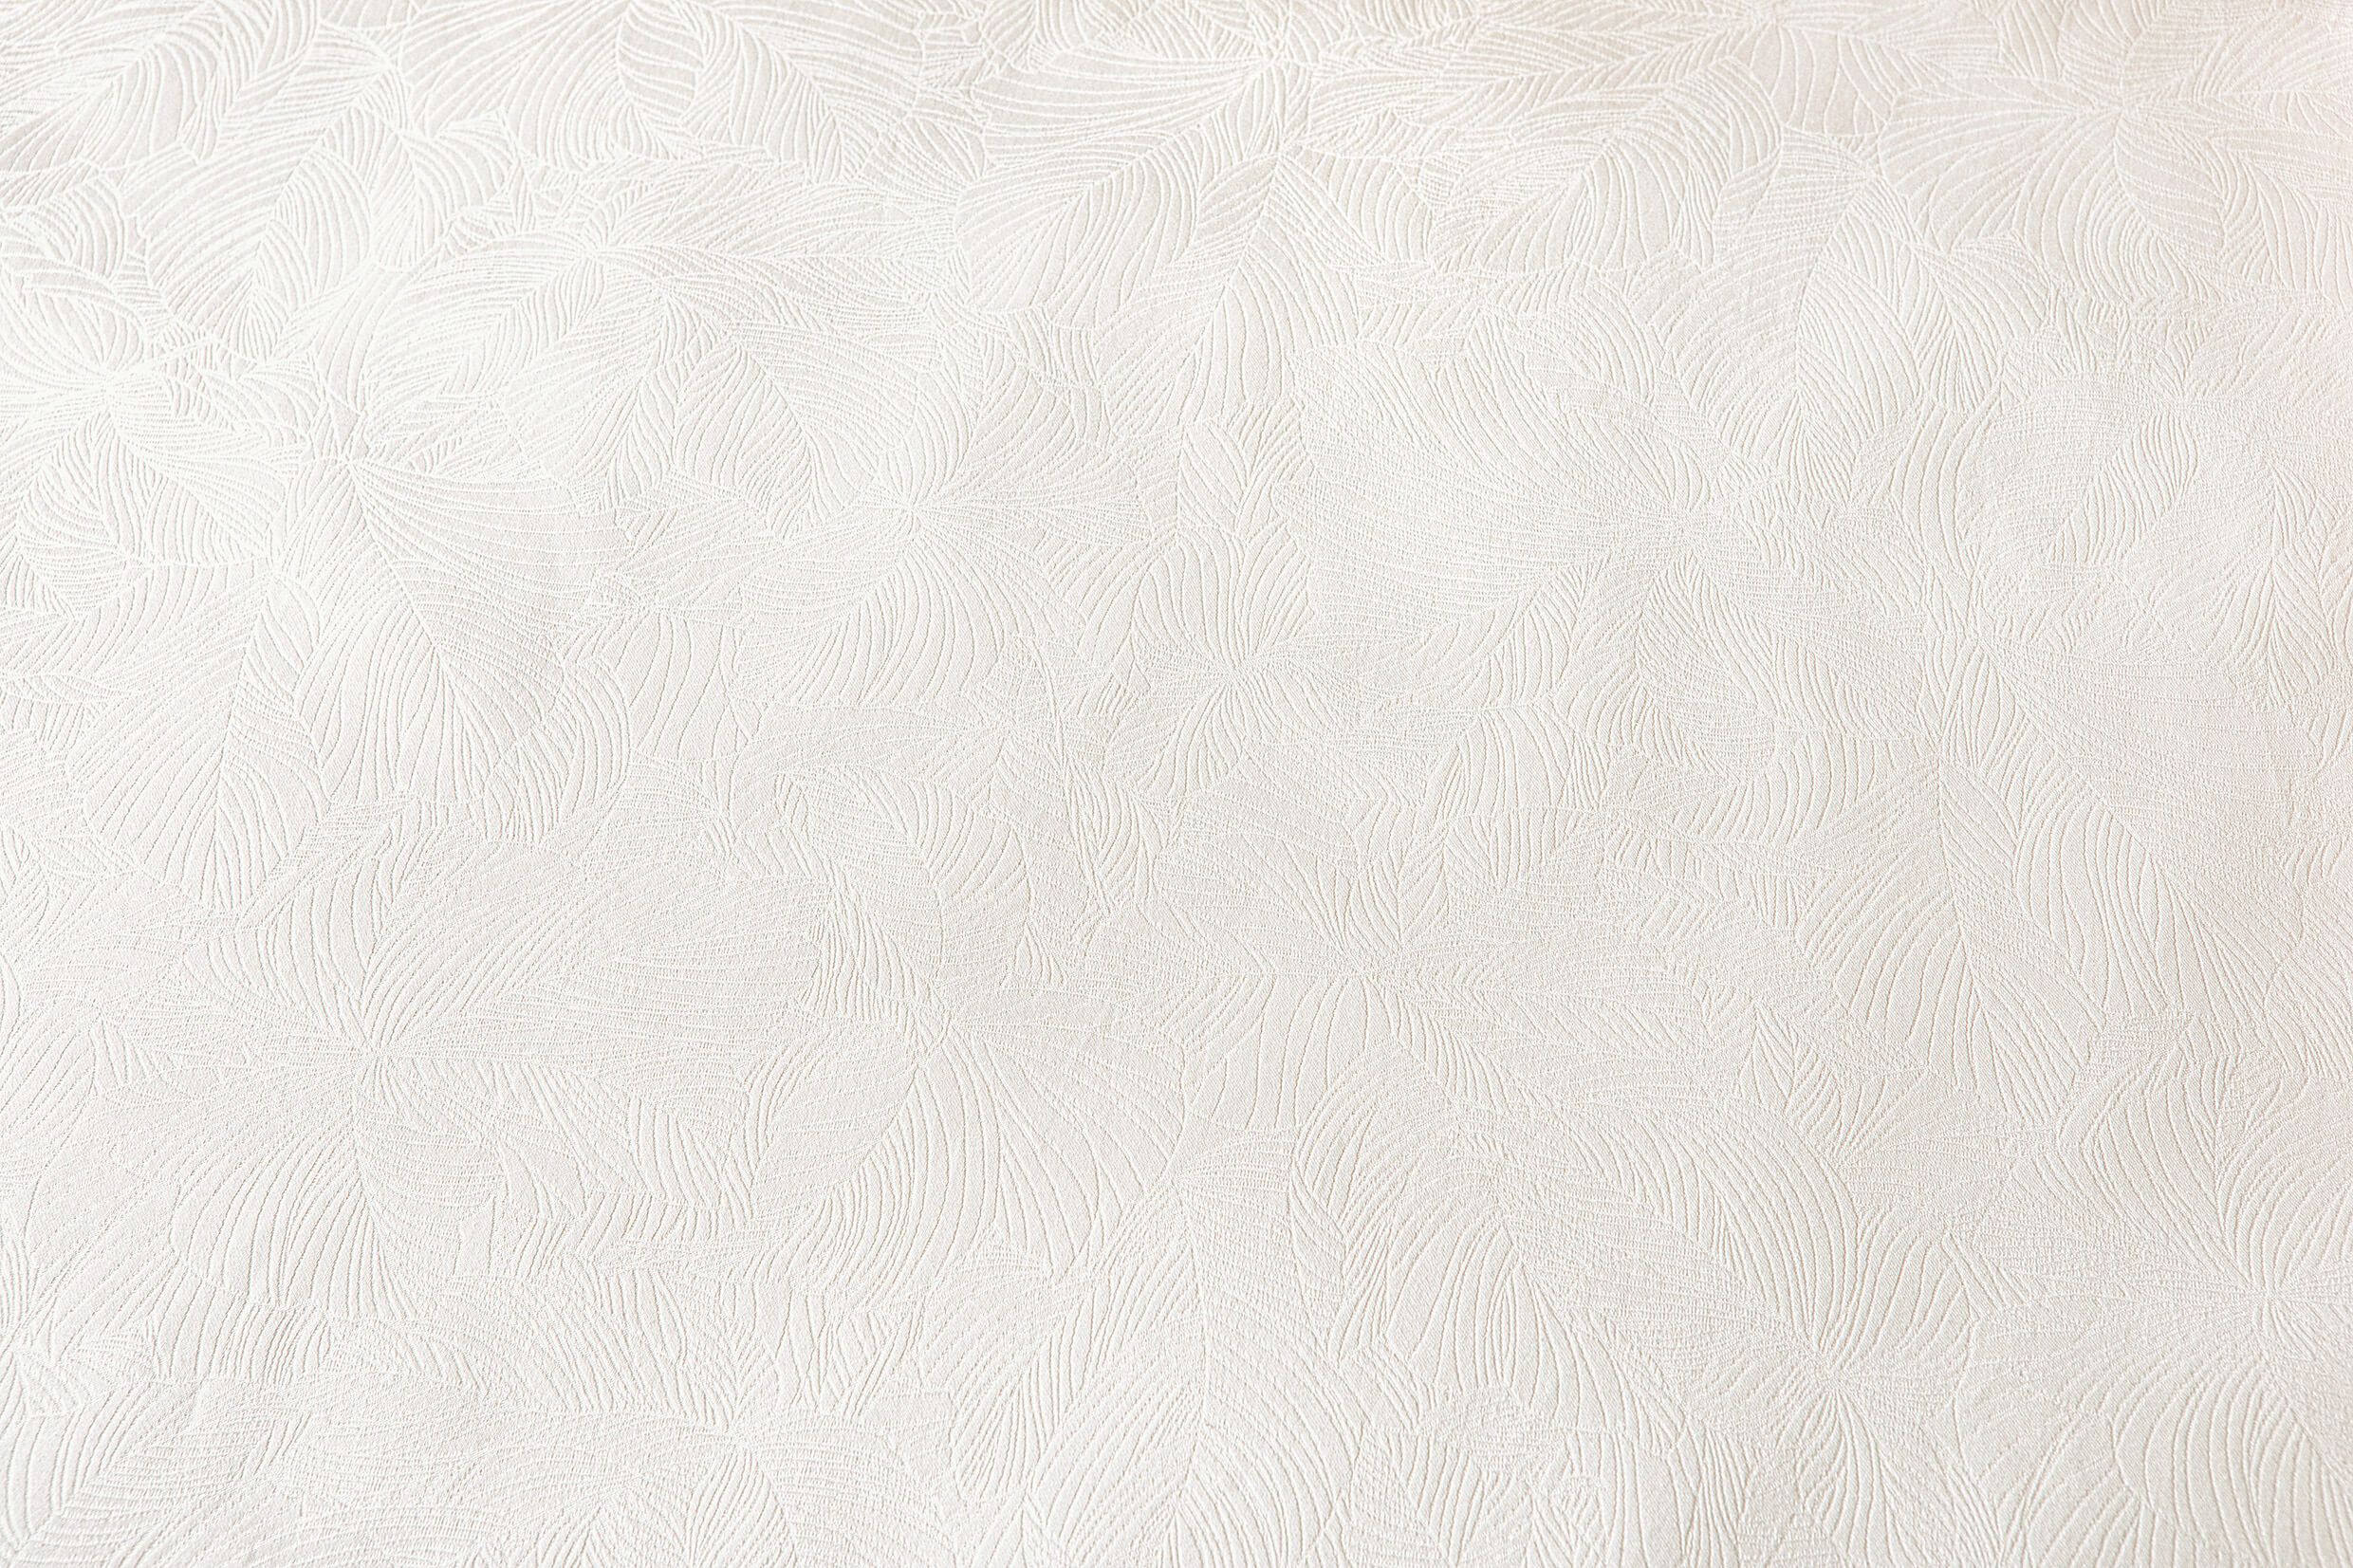 Постельное белье премиум класса Hortus Elfenbein ☞ Размер пододеяльника: 200 x 220 см ☞ Размер простыни: Без простыни ☞ Размер наволочек: 50 x 70 см (2 шт.)